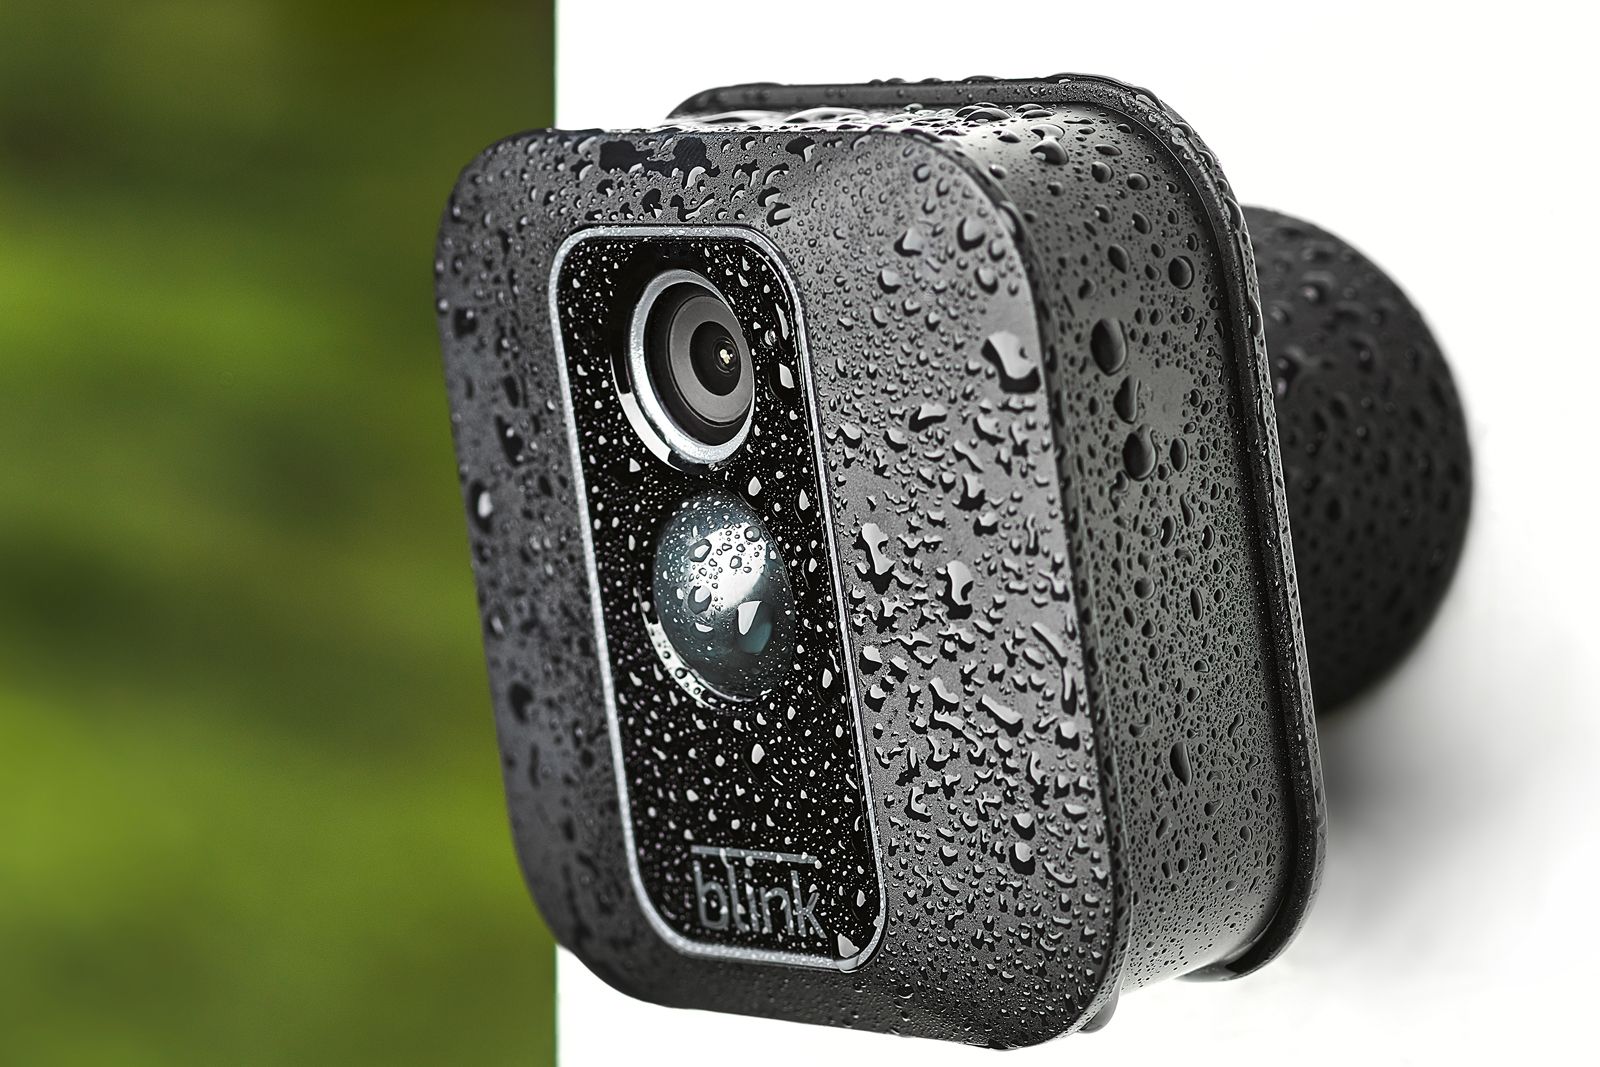 Get 25 percent off the Blink XT2 indoor/outdoor smart security camera photo 1